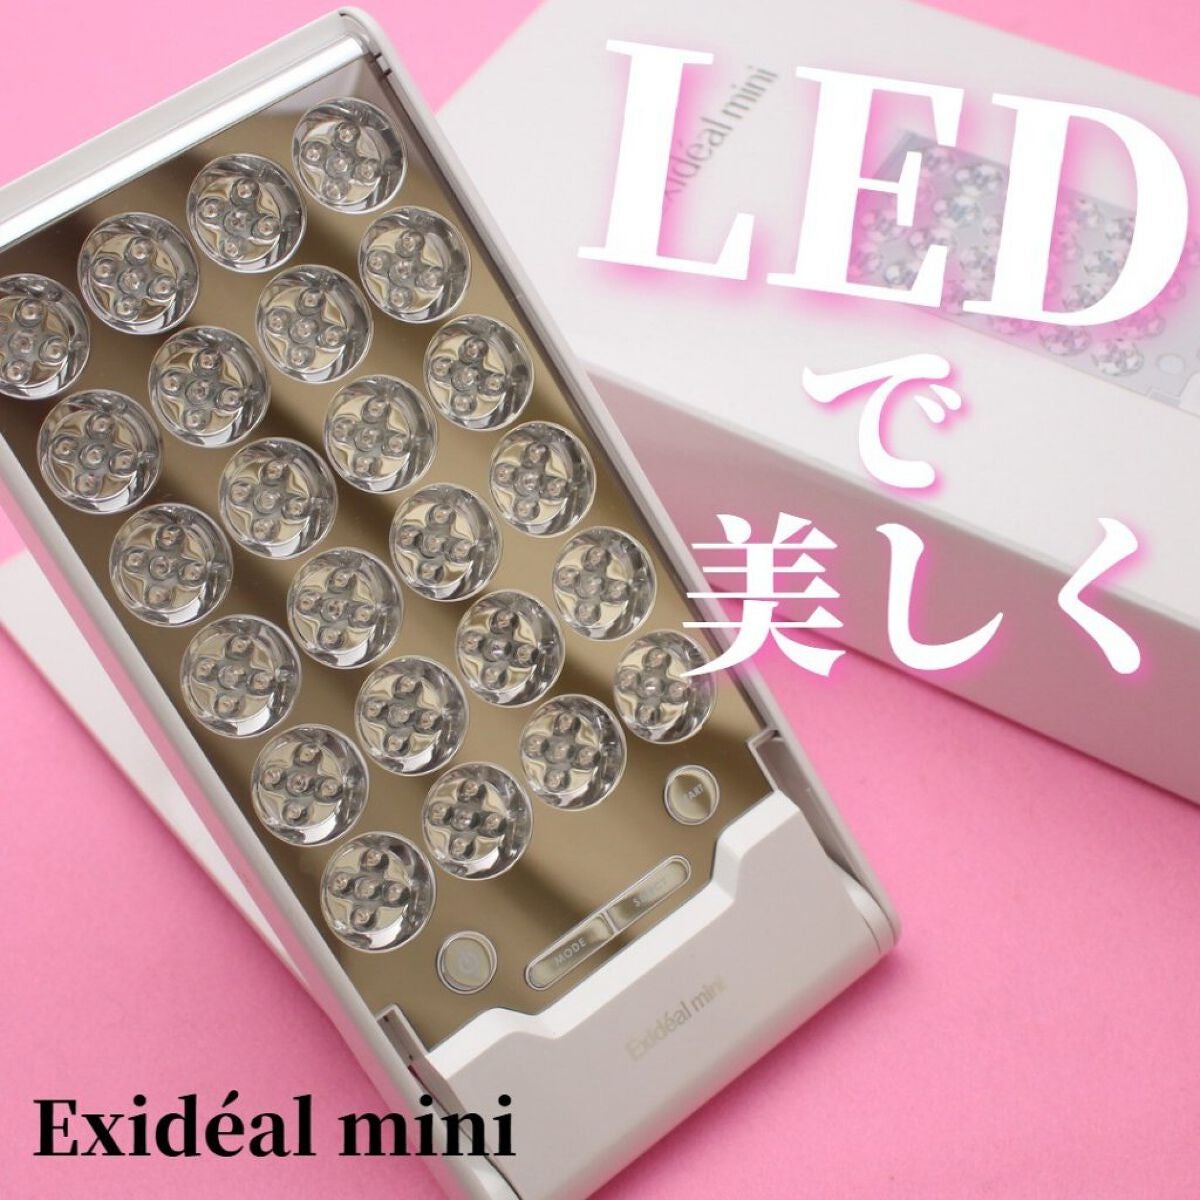 Exideal mini (エクスイディアルミニ)LED美顔器 EX-120 - 美容/健康